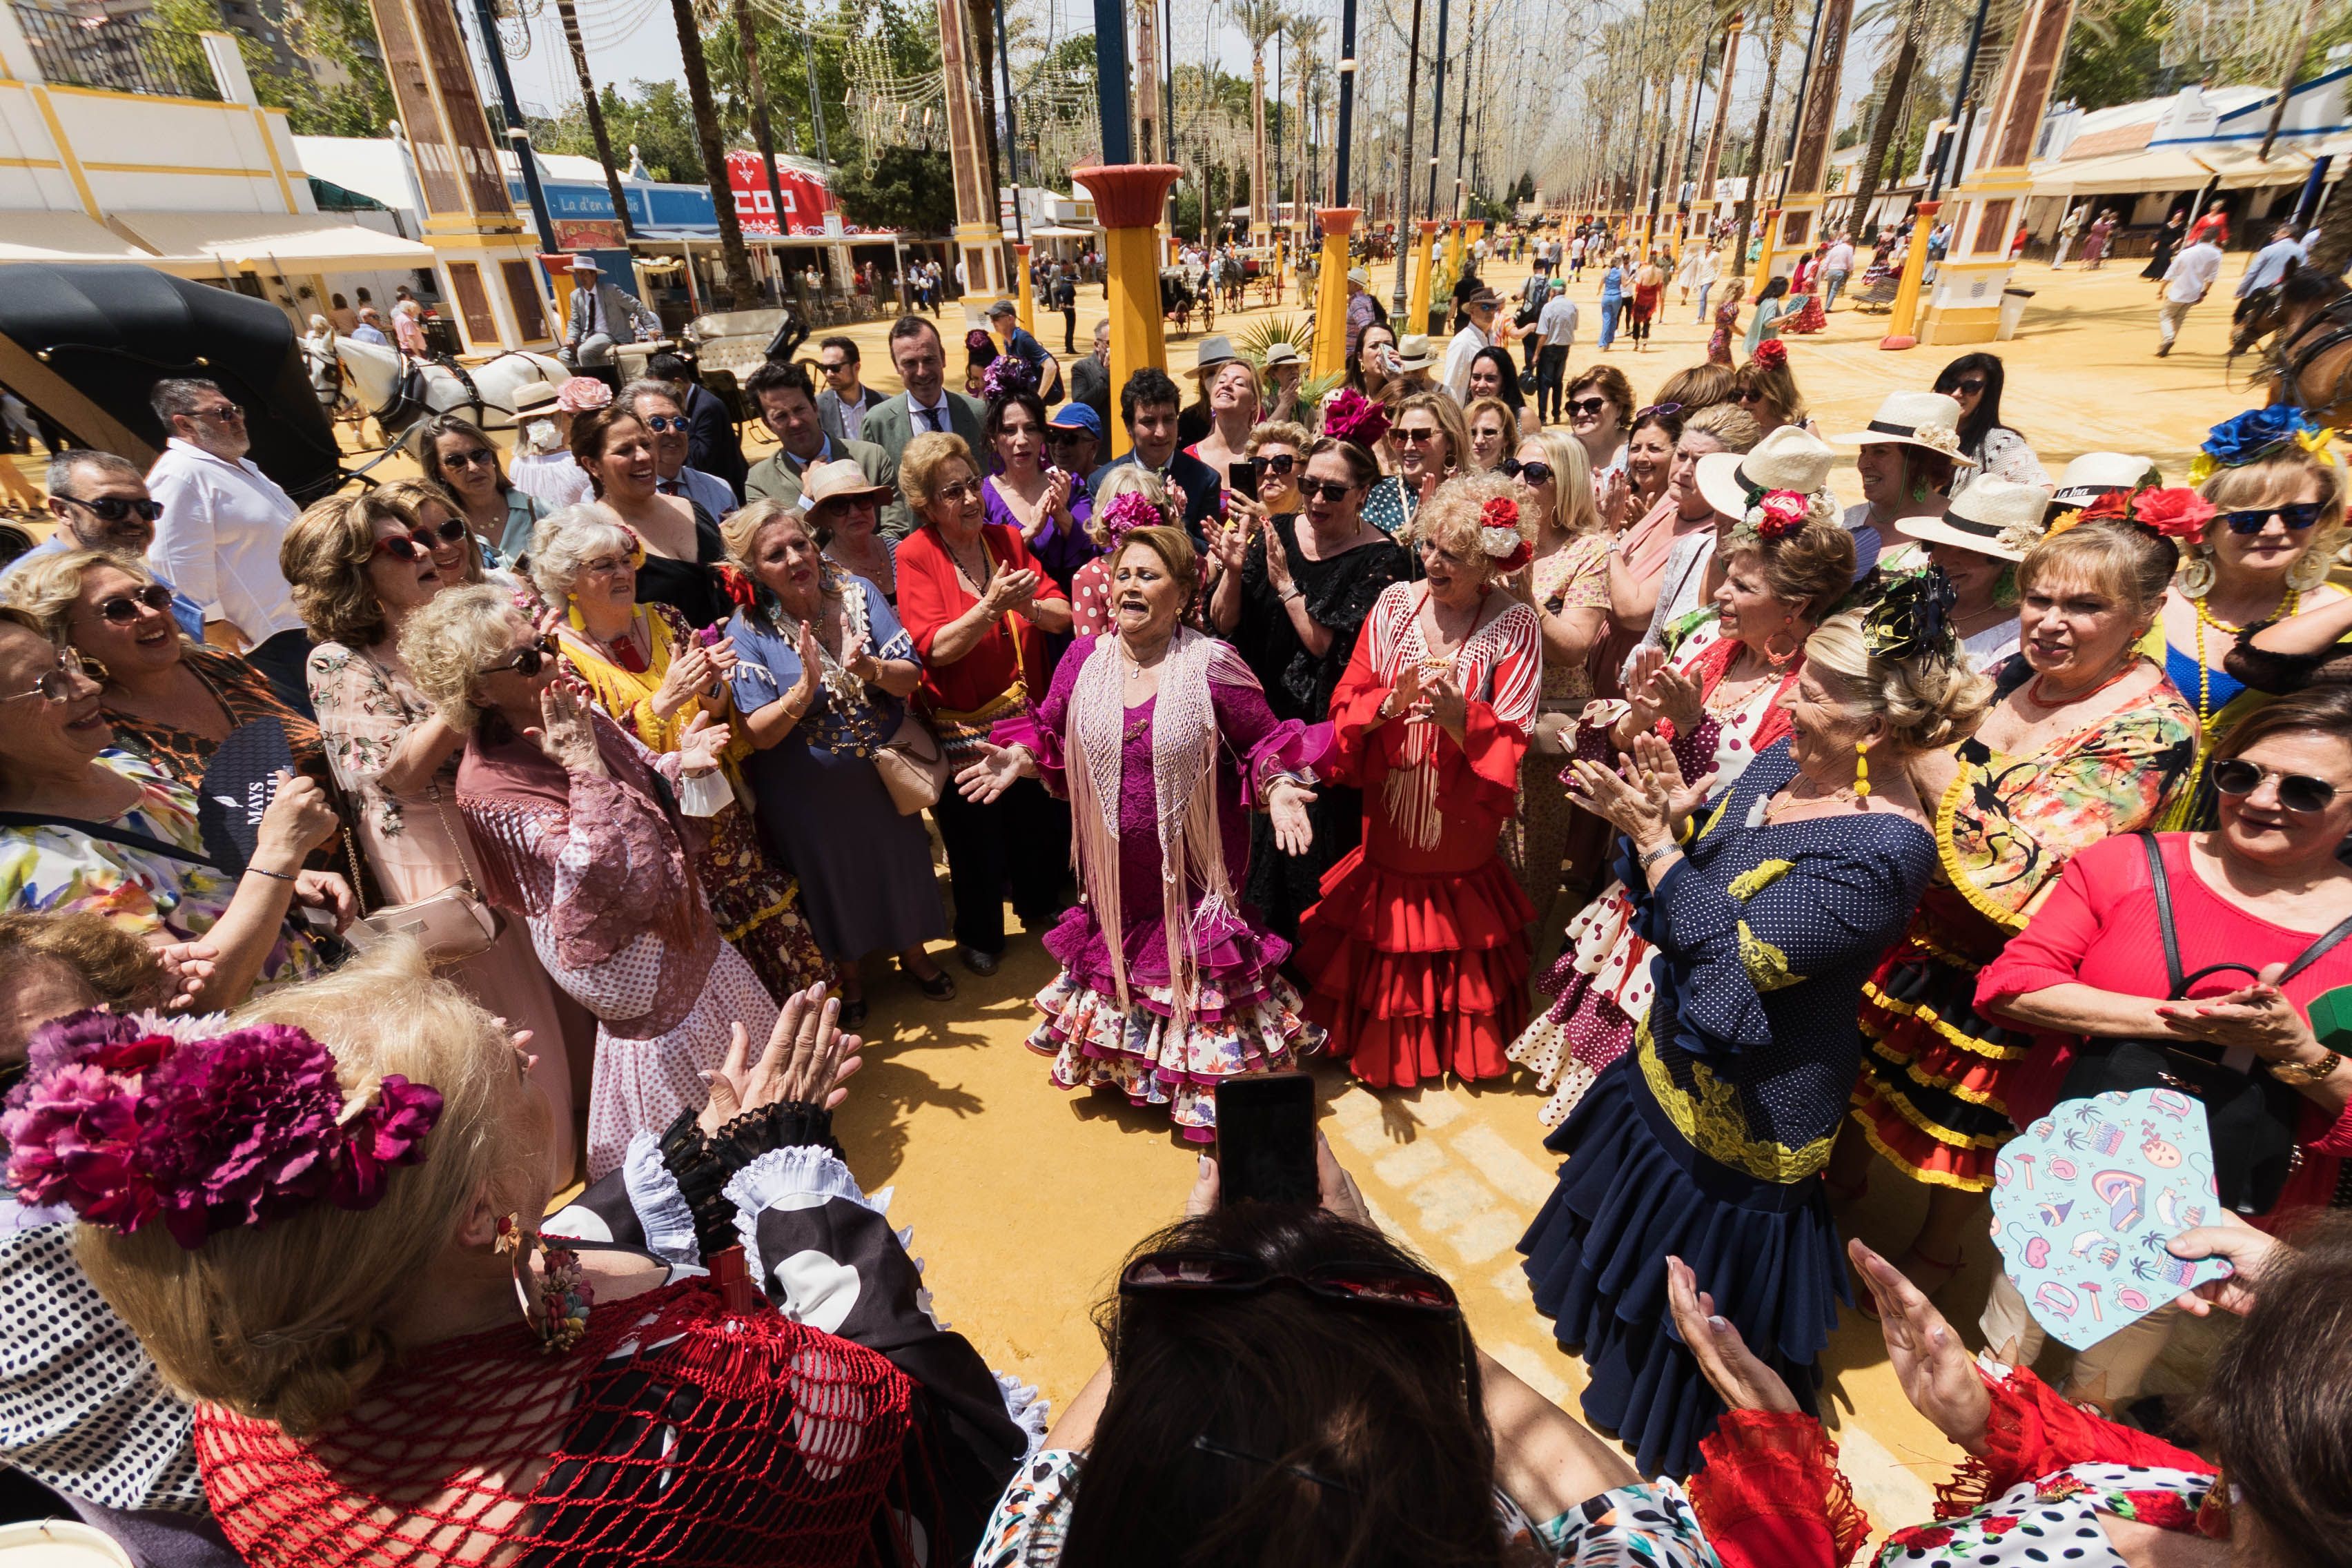 Numerosos grupos de mujeres en el miércoles de Feria del Caballo, el día grande de verdad.